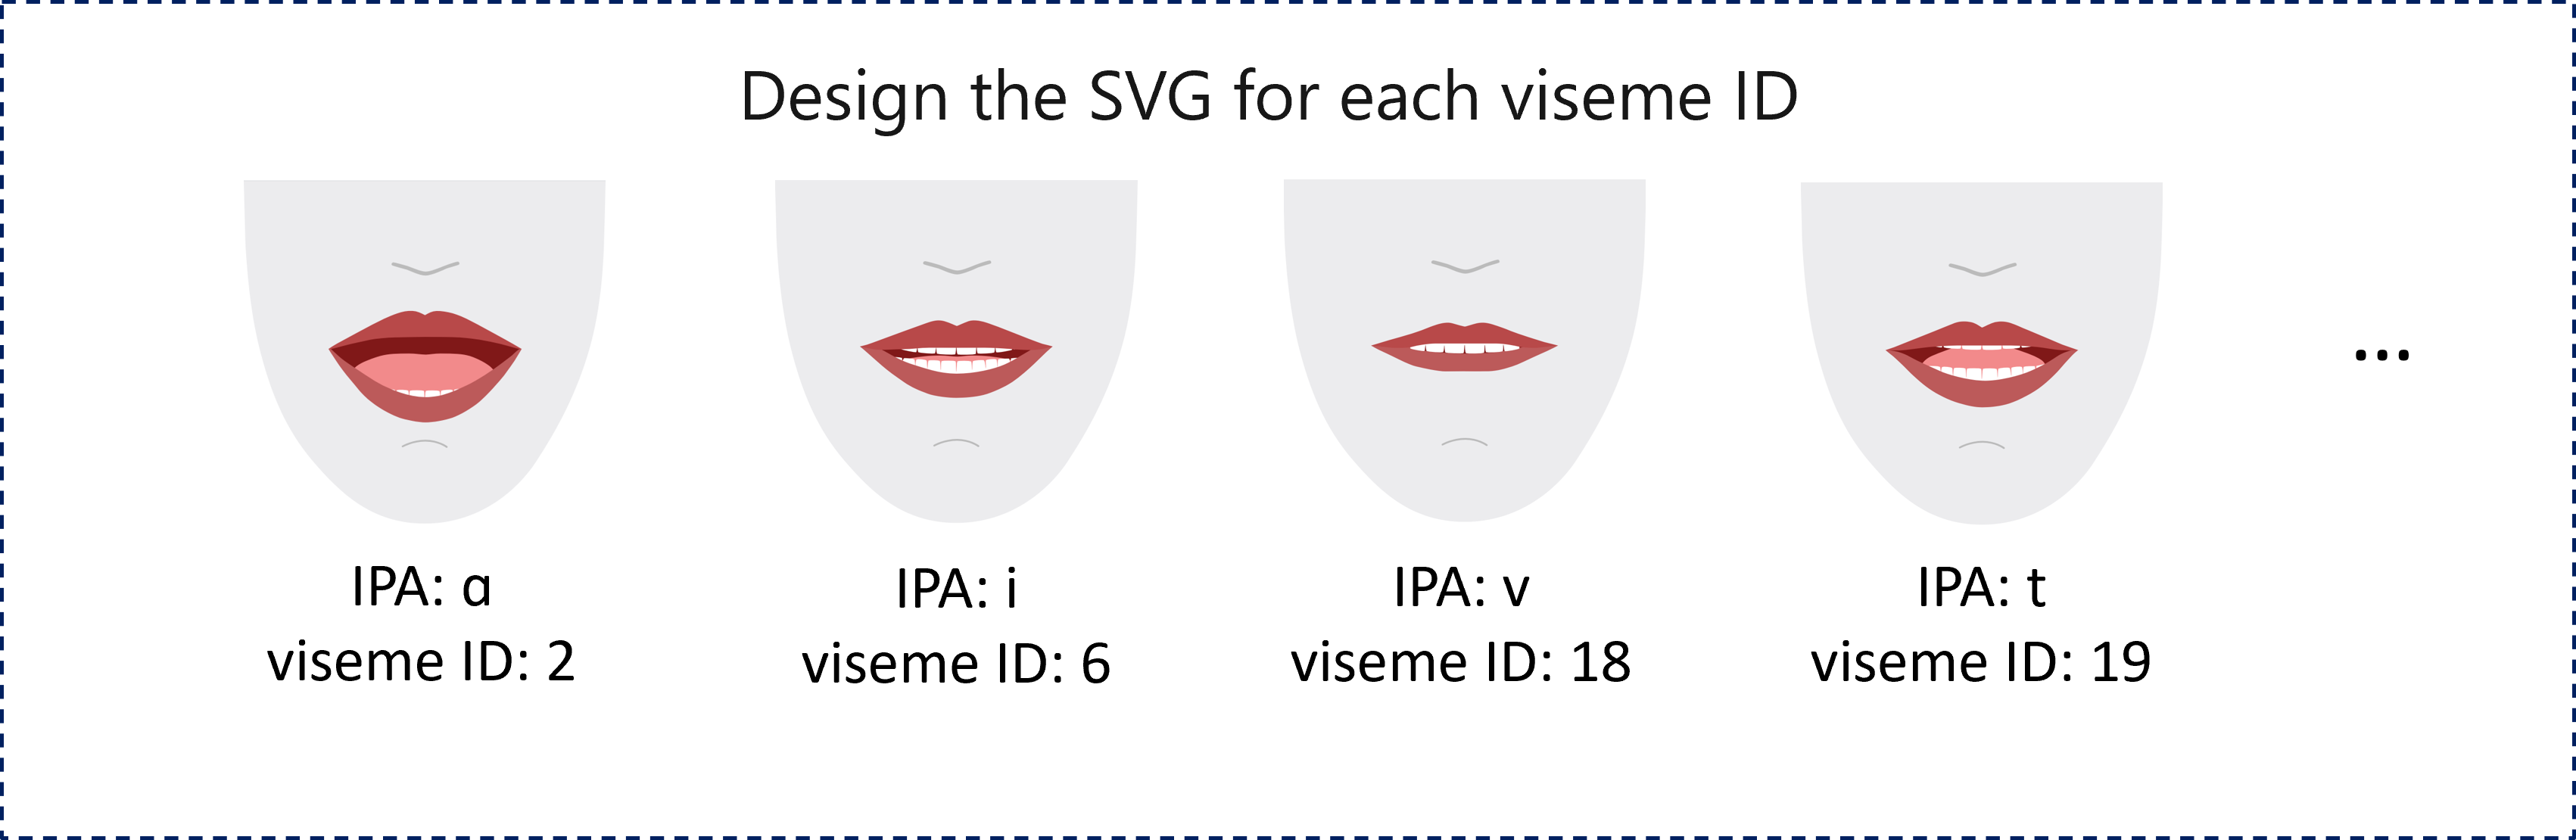 赤い唇の 4 つの 2D レンダリング例を示すスクリーンショット。それぞれが 1 つの音素に対応する異なる口形素 ID を表しています。